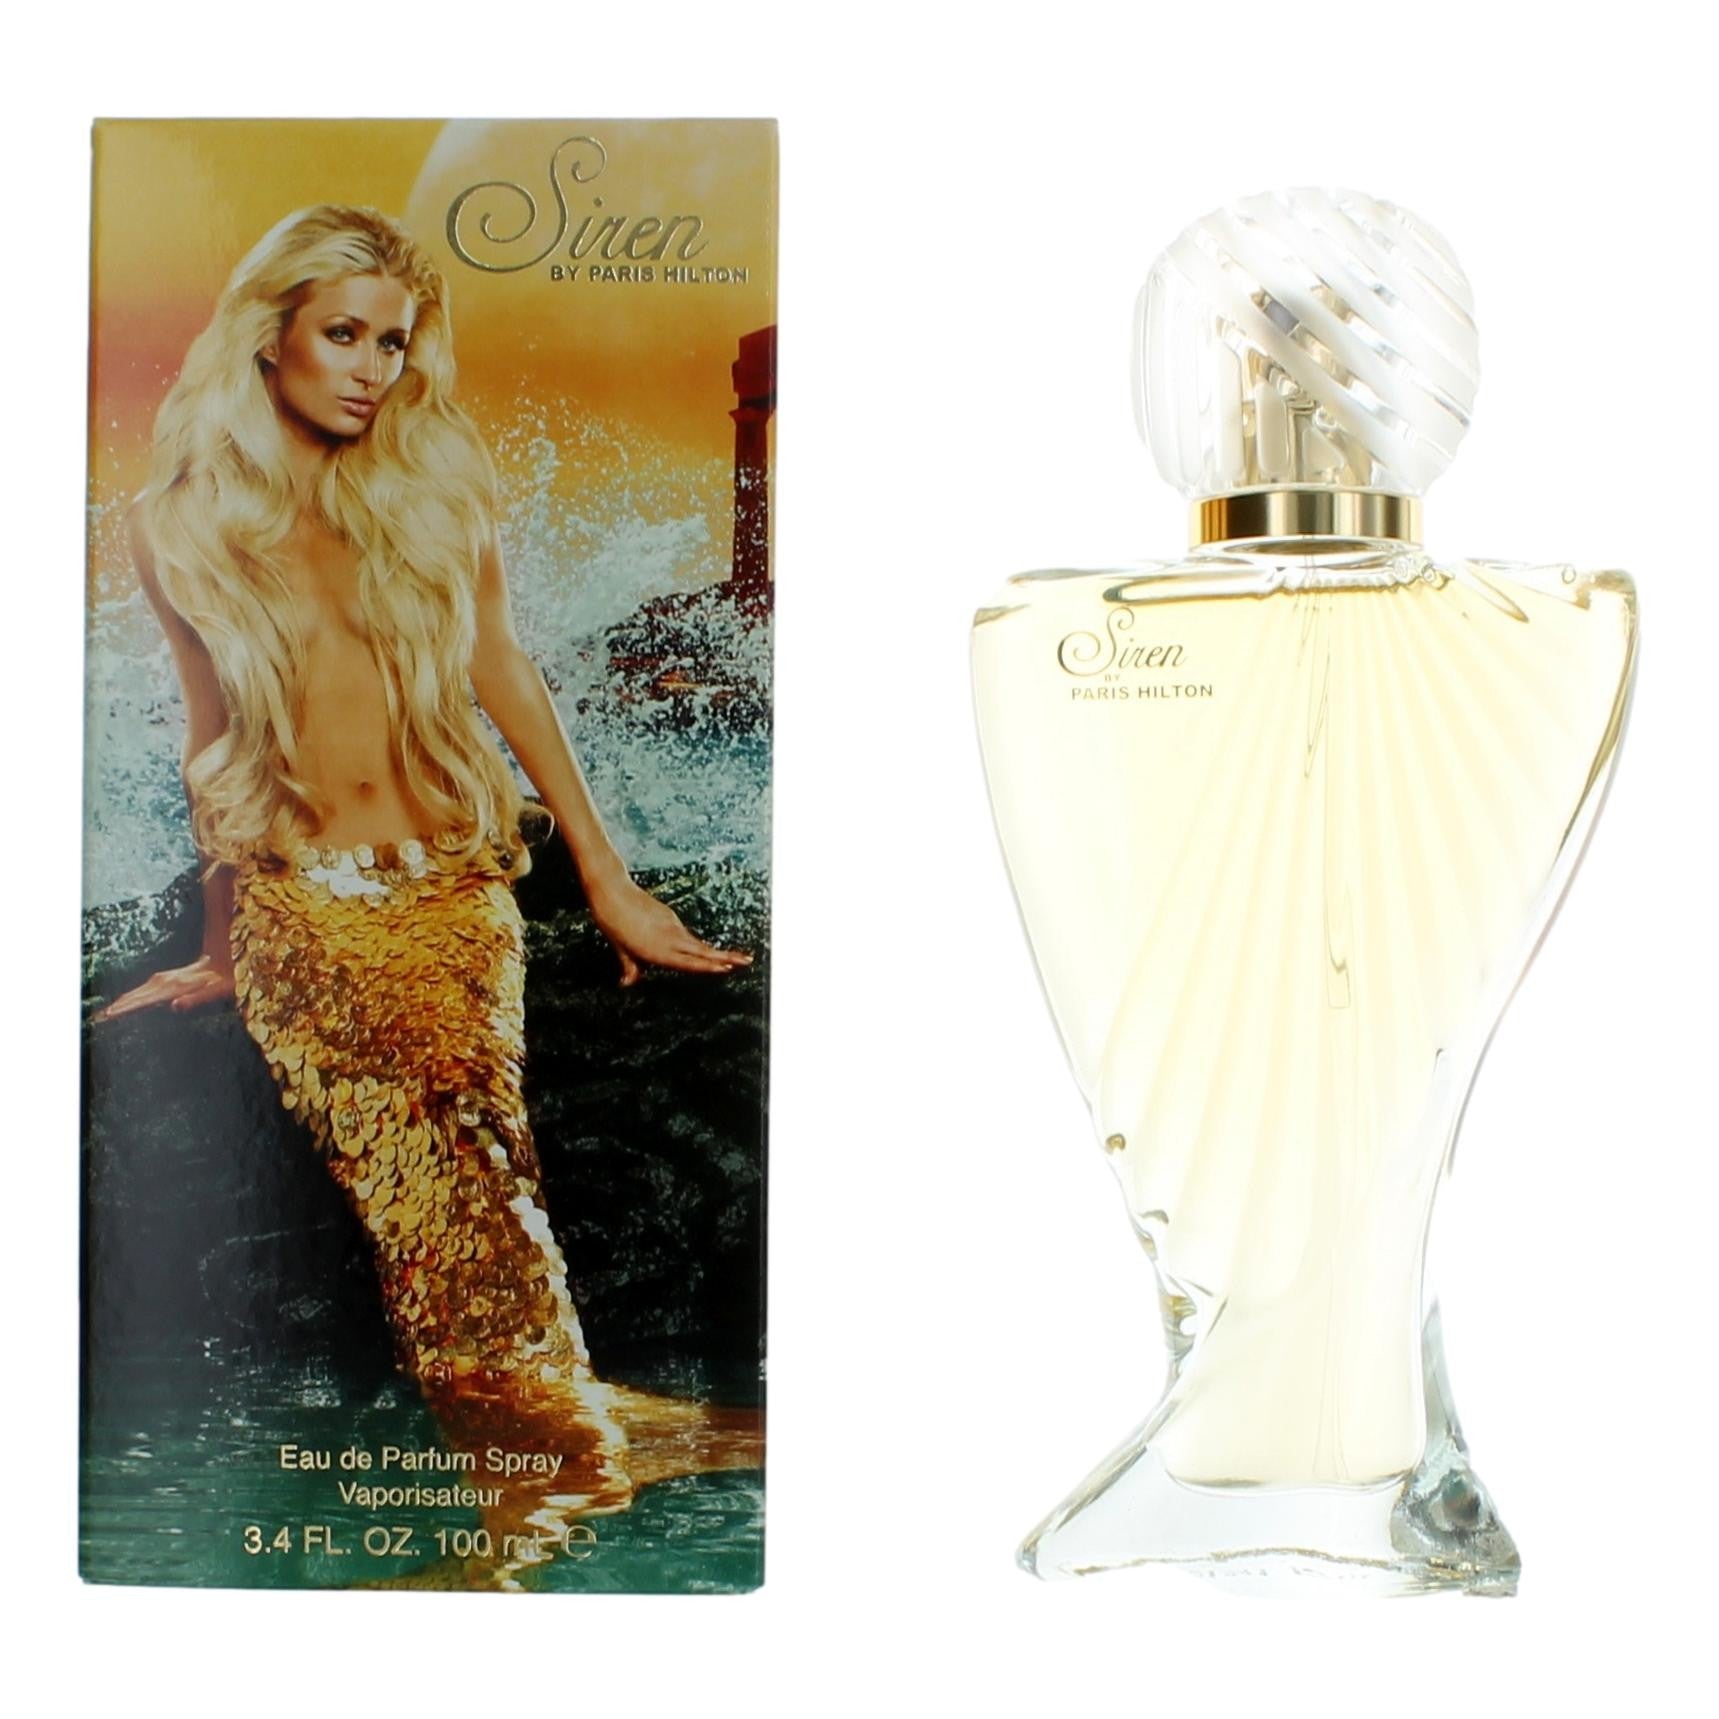 Bottle of Siren by Paris Hilton, 3.4 oz Eau De Parfum Spray for Women